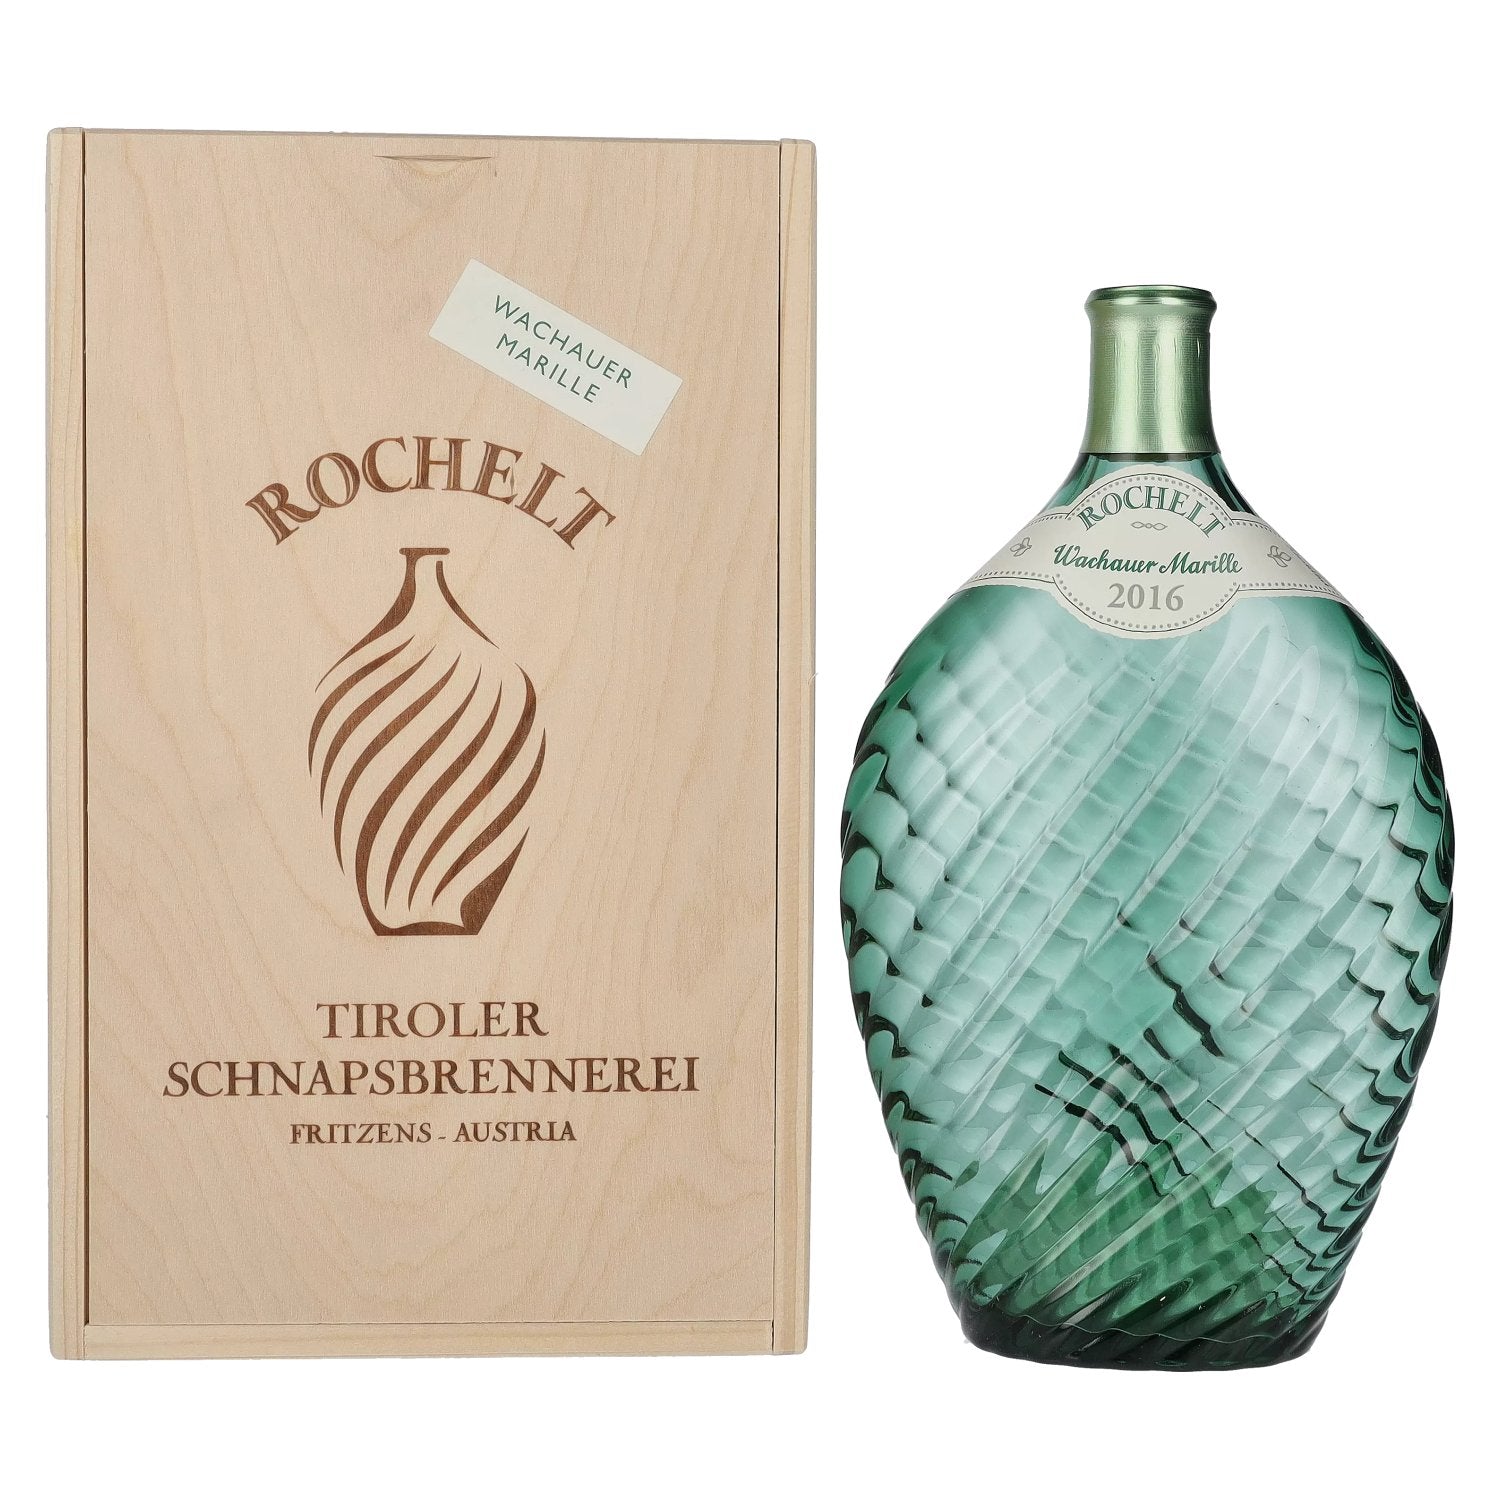 Rochelt Wachauer Marille 2016 50% Vol. 0,7l in Holzkiste